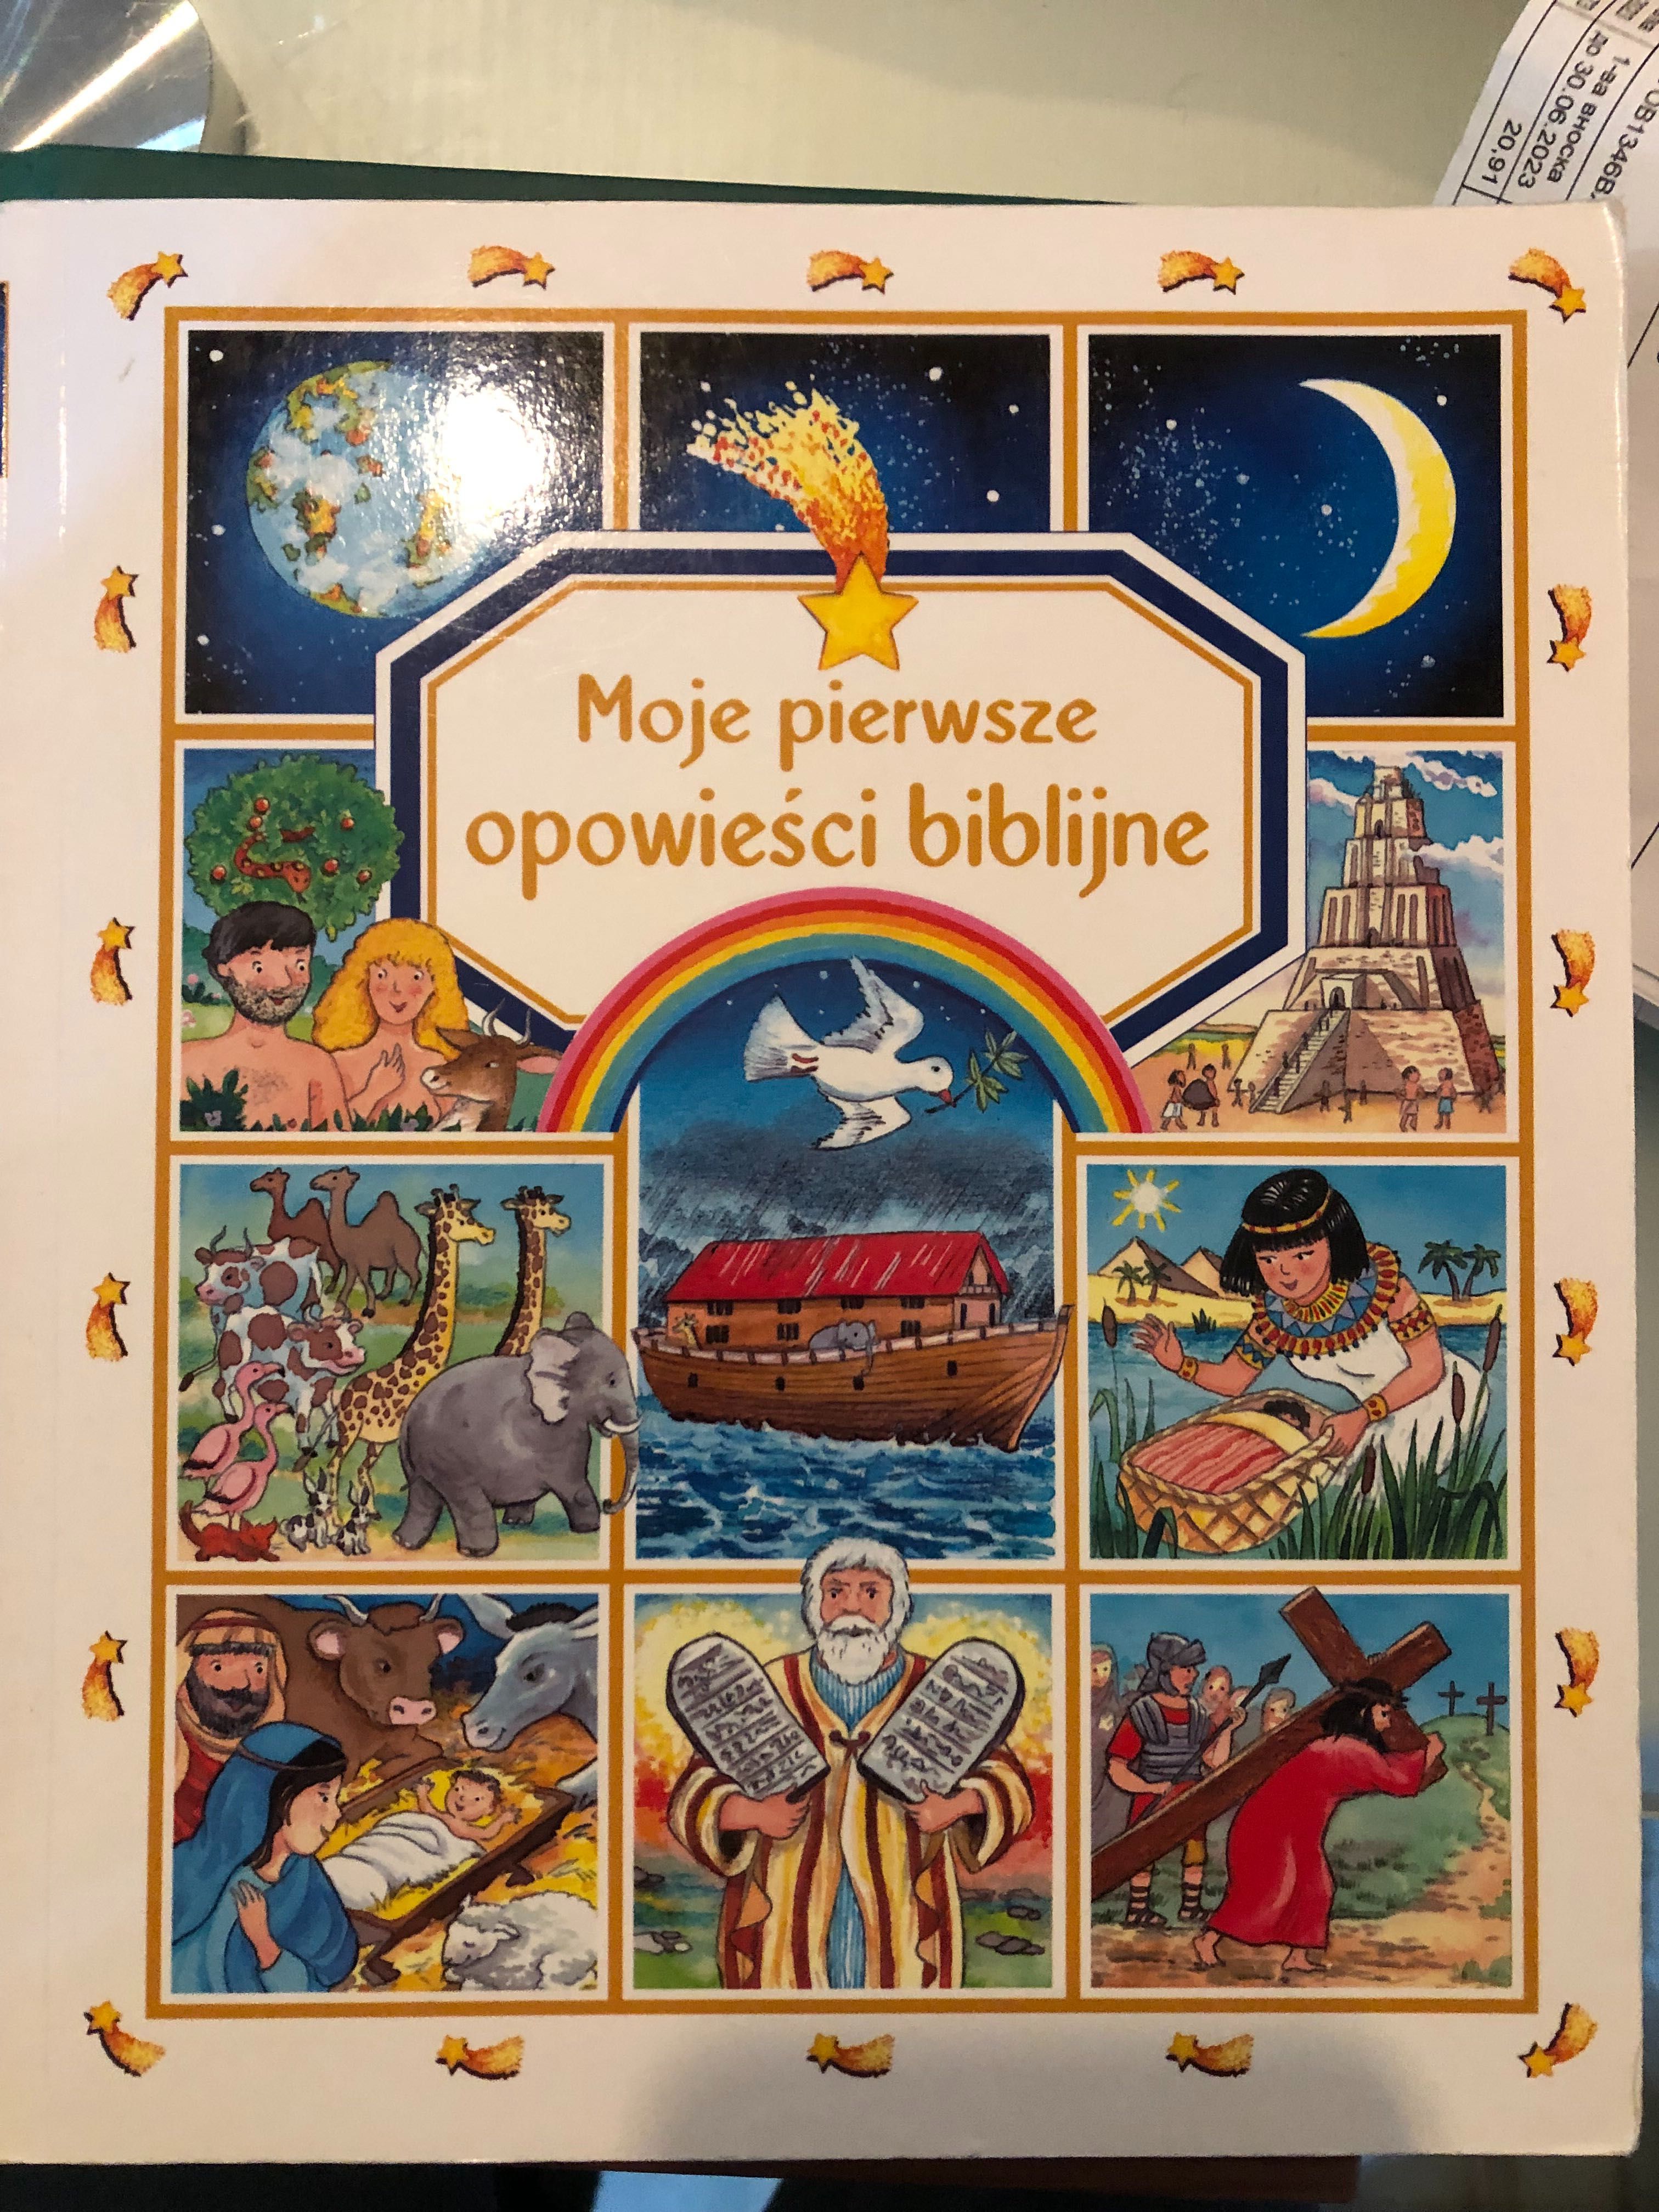 Детска библия на полски език